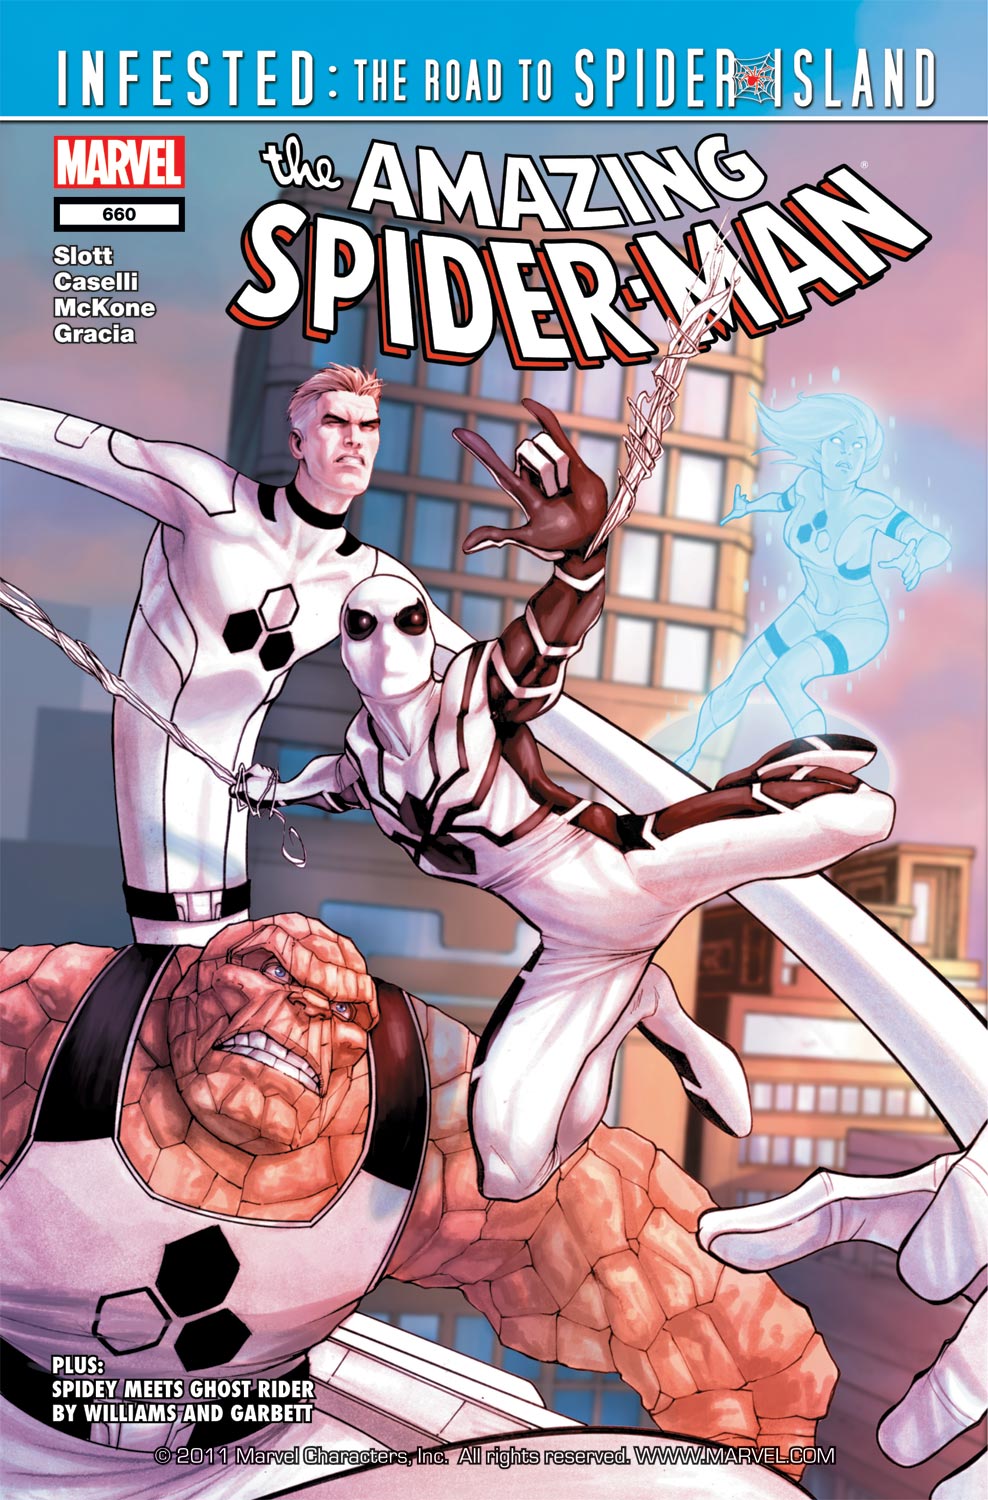 Amazing Spider-Man (1999) #660